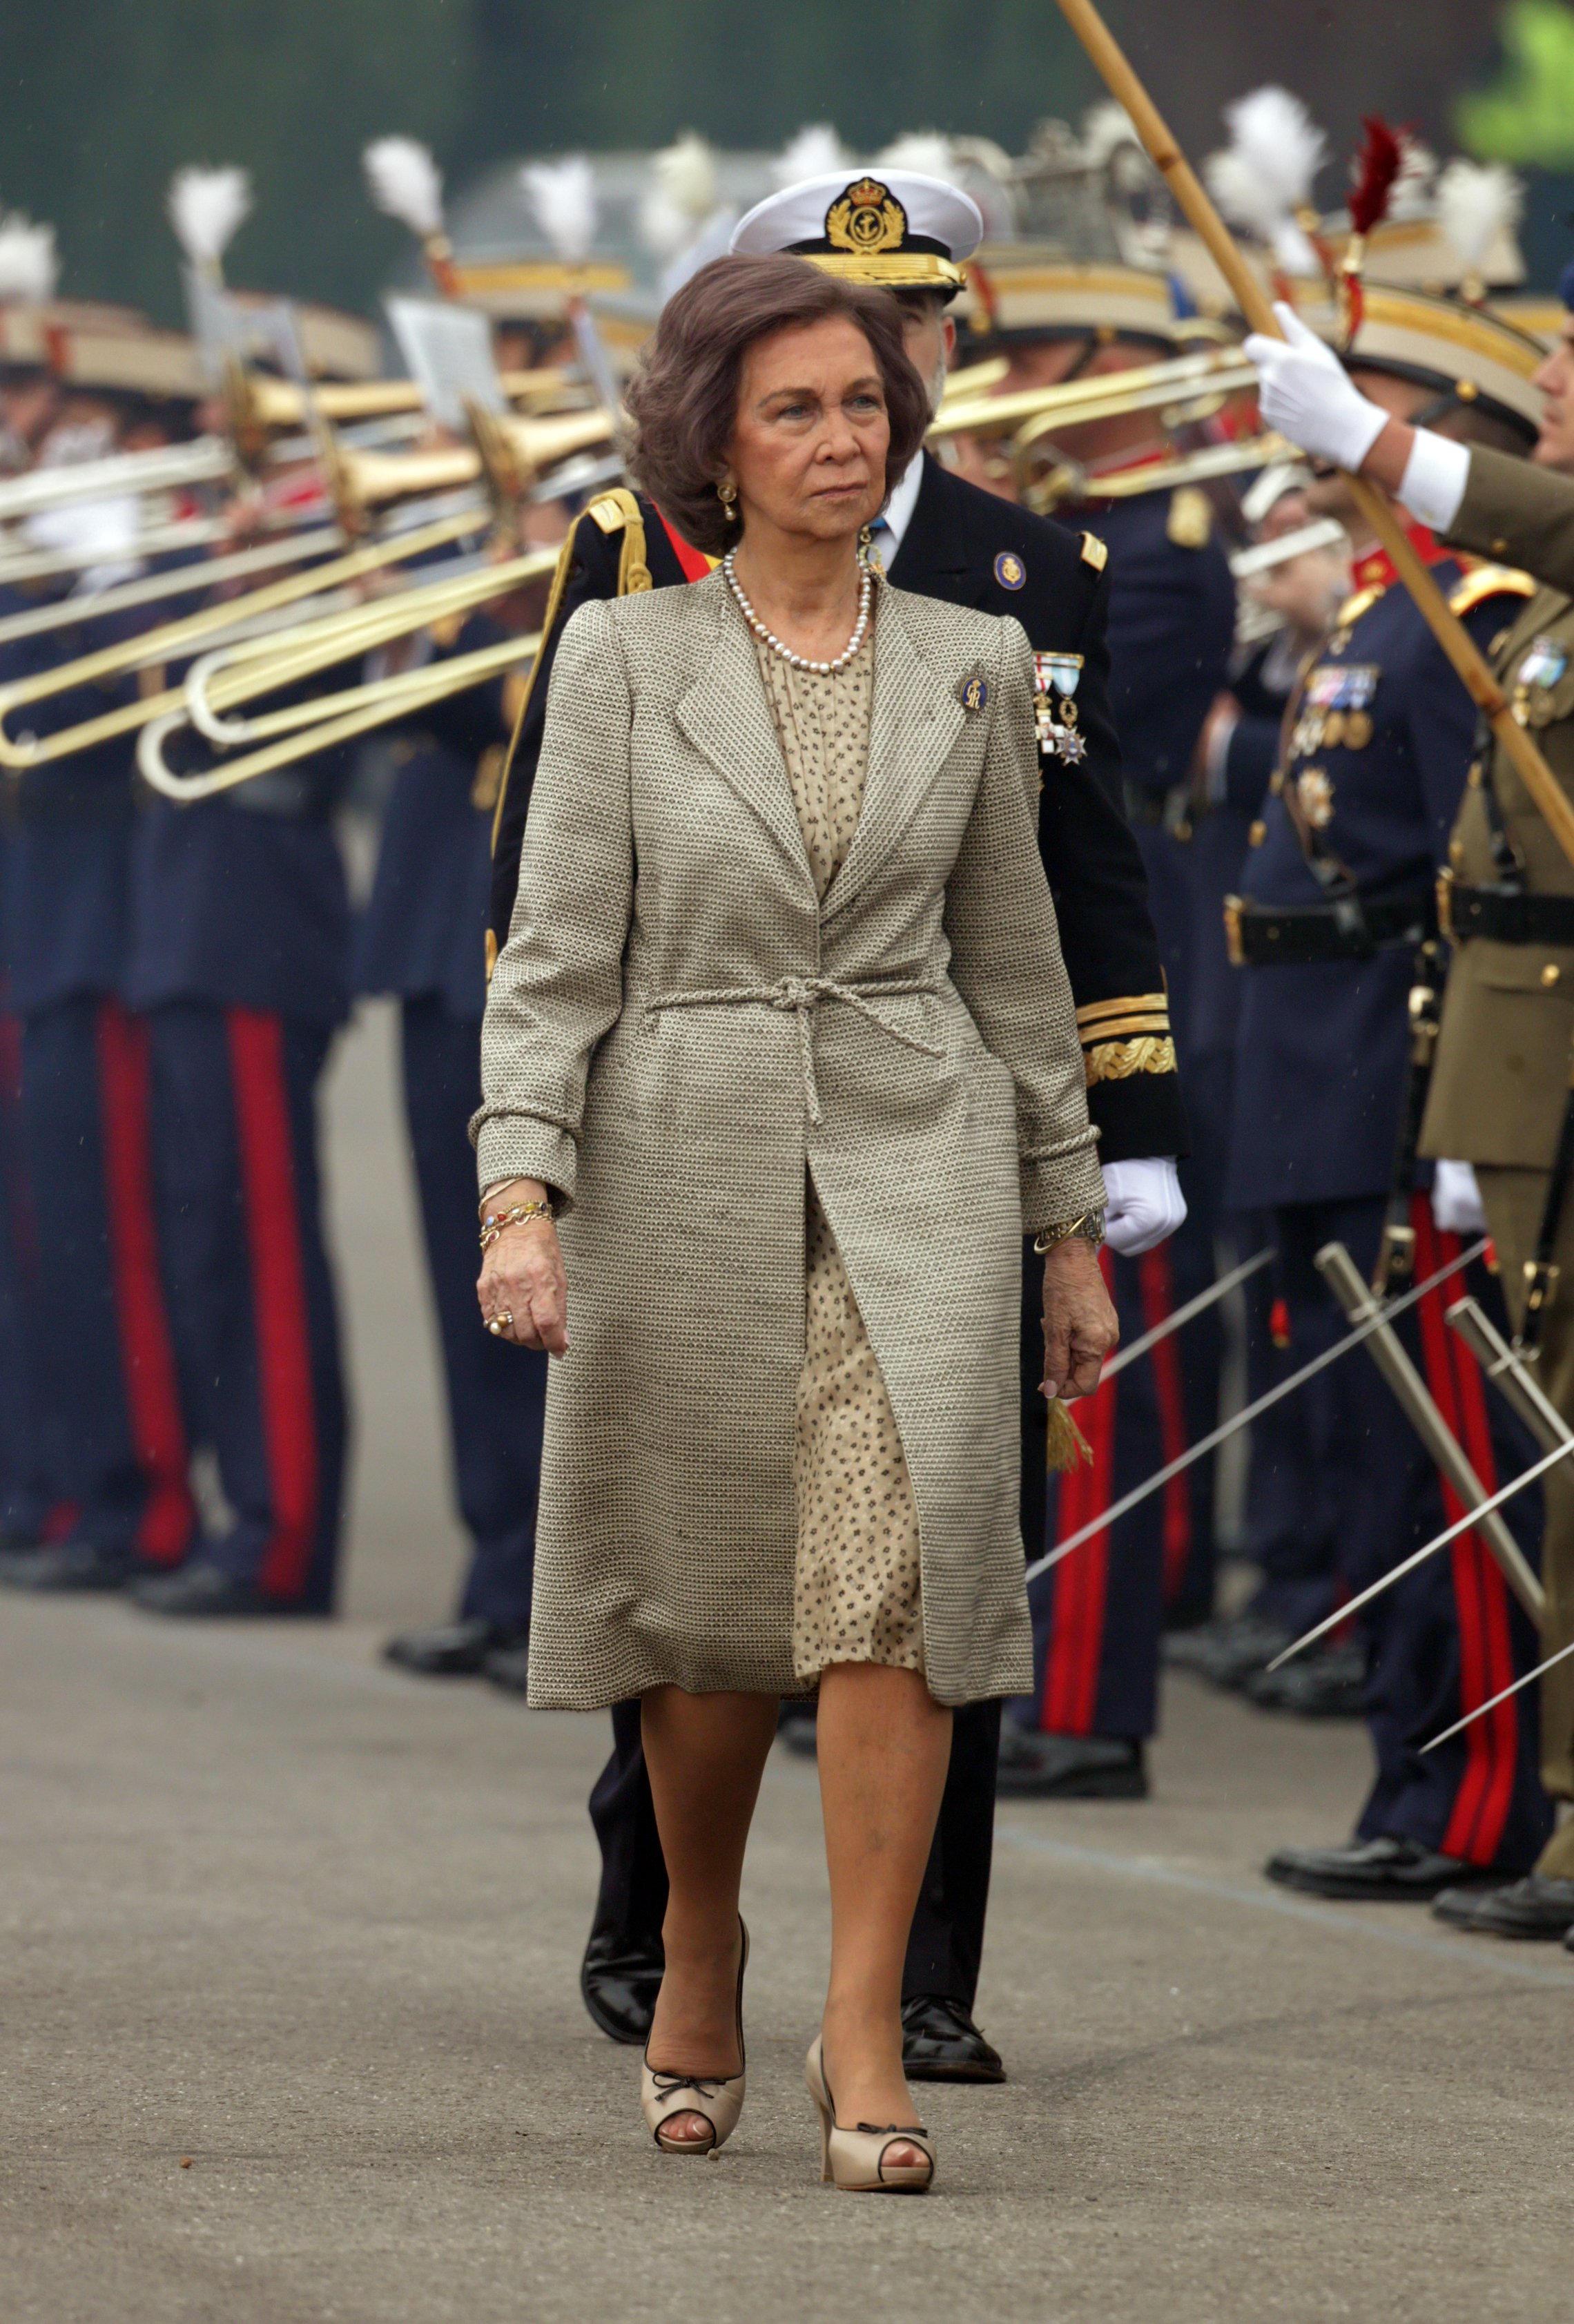 Sofía, matriarca de Marivent en ausencia de Juan Carlos